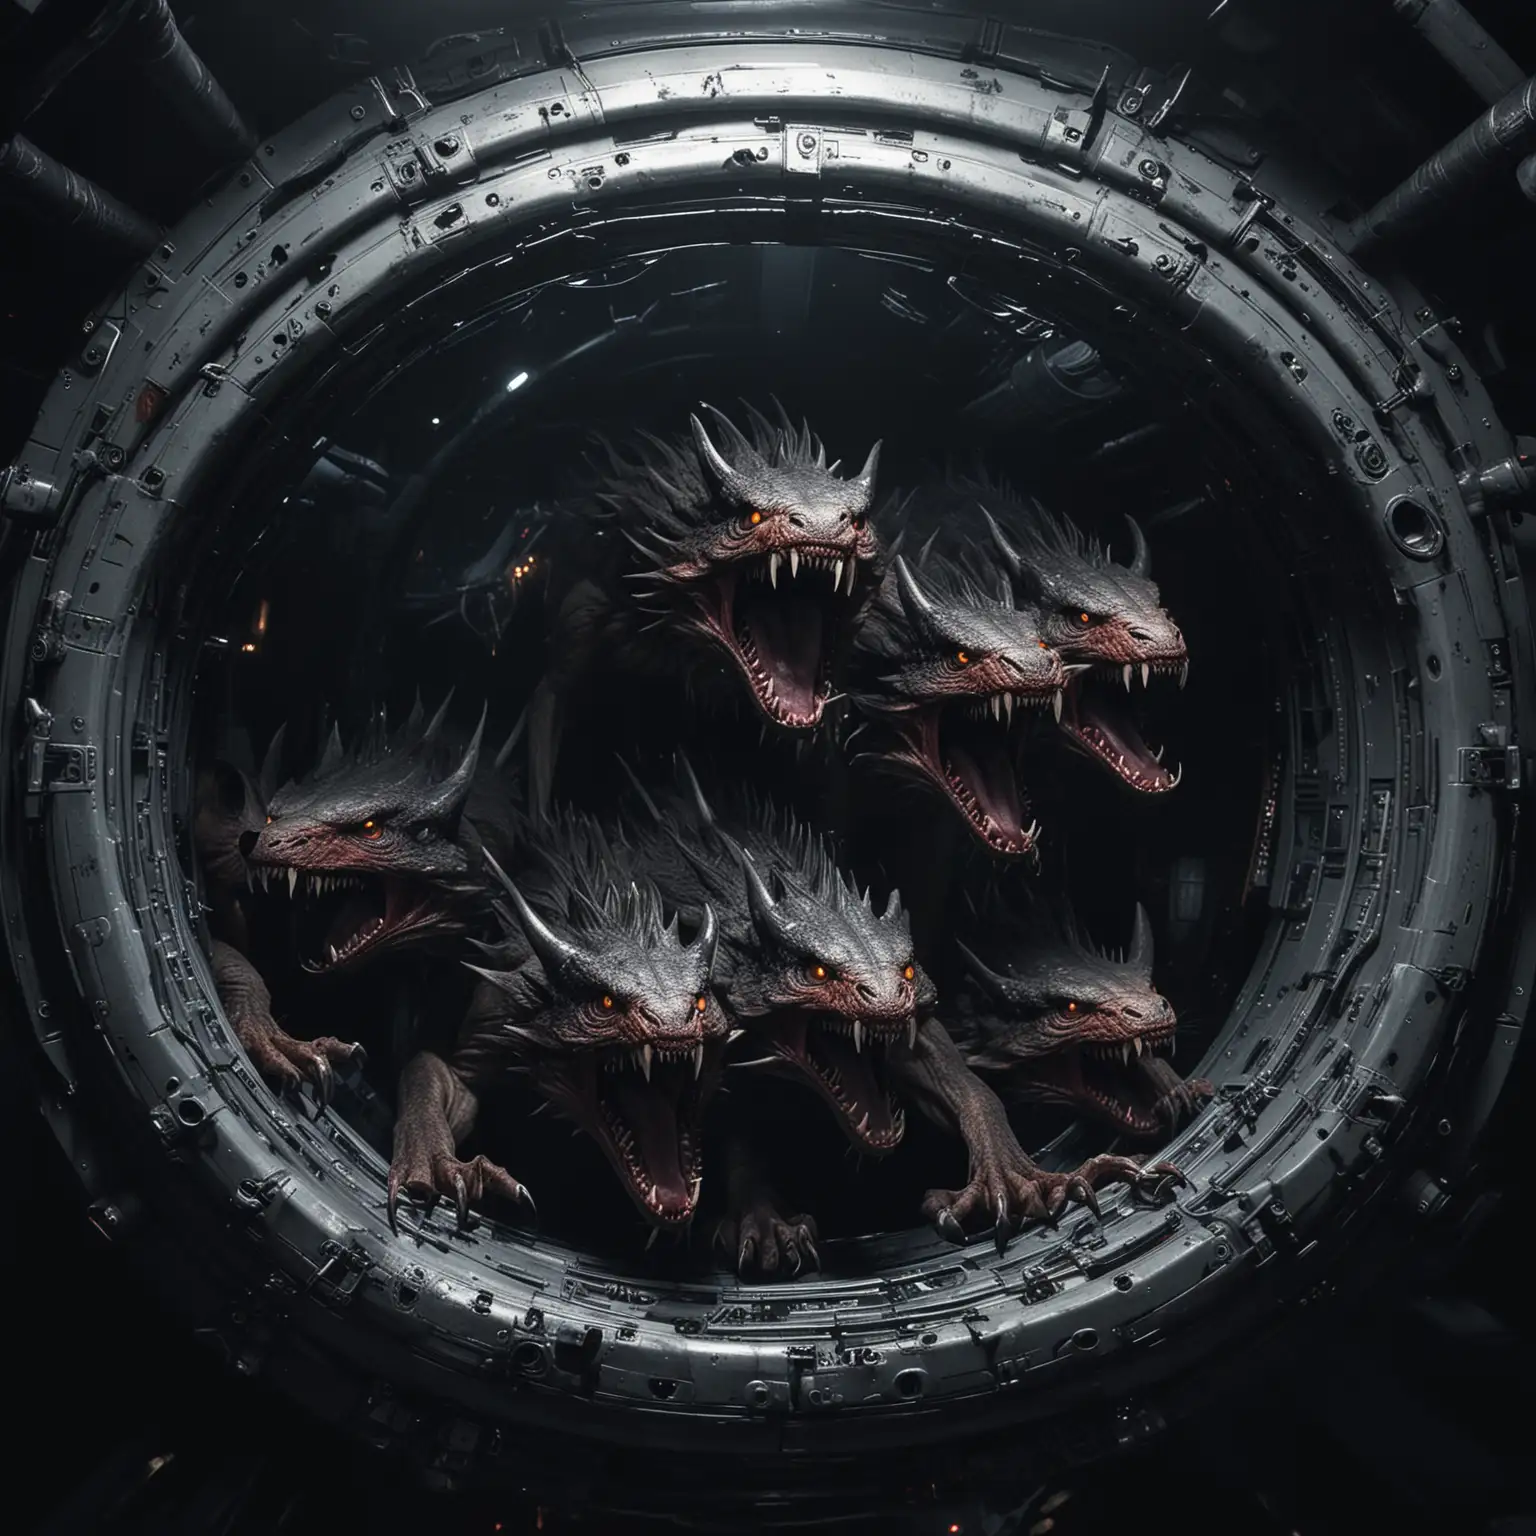 Des créatures nocturnes qui se cachent dans les coins sombres du vaisseau spatial, attendant patiemment leur proie pour surgir de l'obscurité. Leurs griffes acérées et leurs crocs empoisonnés en font des adversaires redoutables.